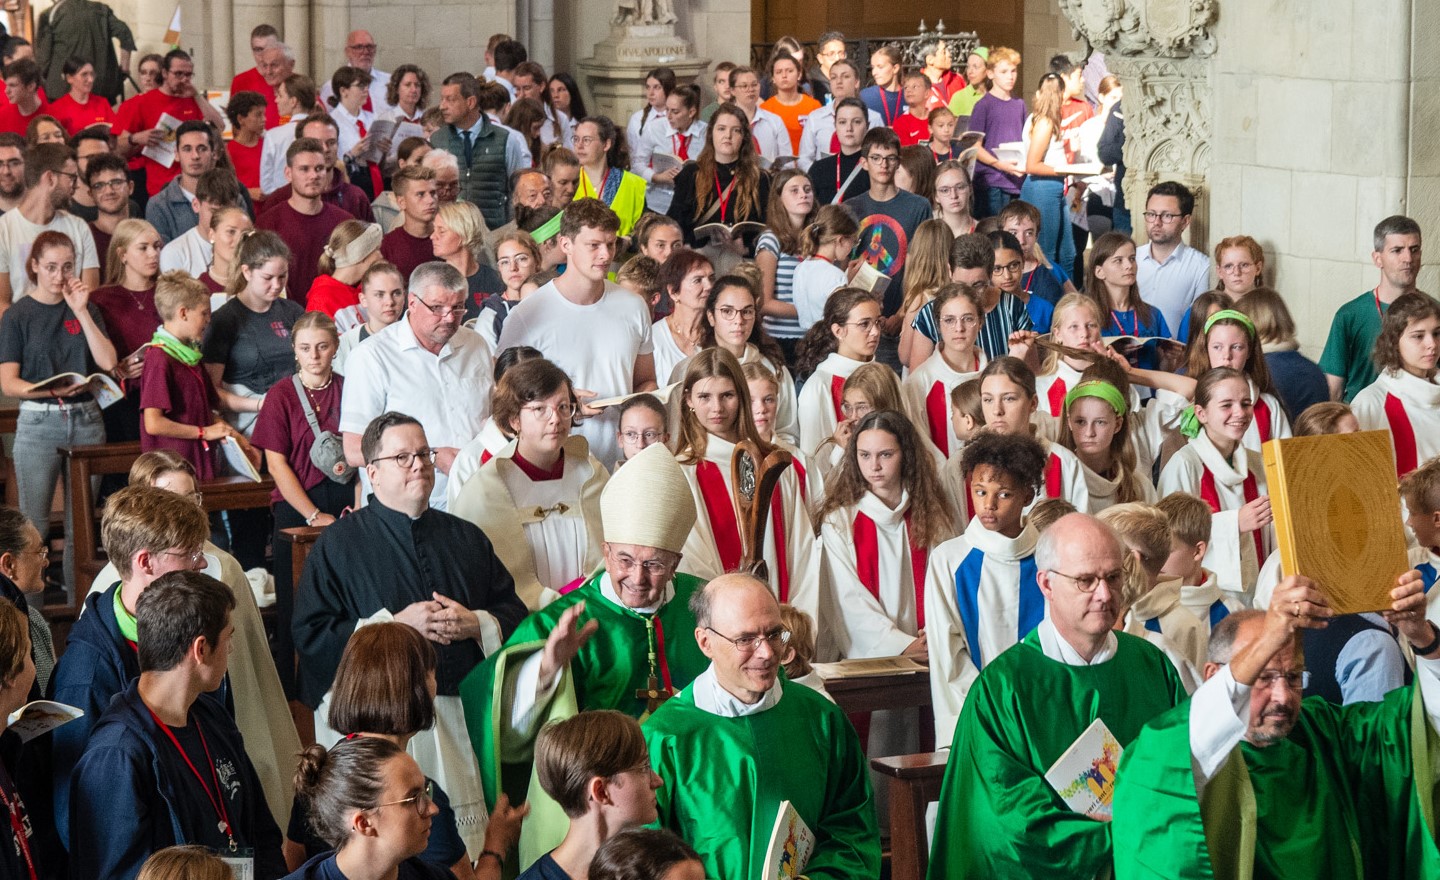 Der Bischof und weitere Beteiligte ziehen durch den Mittelgang des mit jungen Menschen voll besetzten Dom ein.